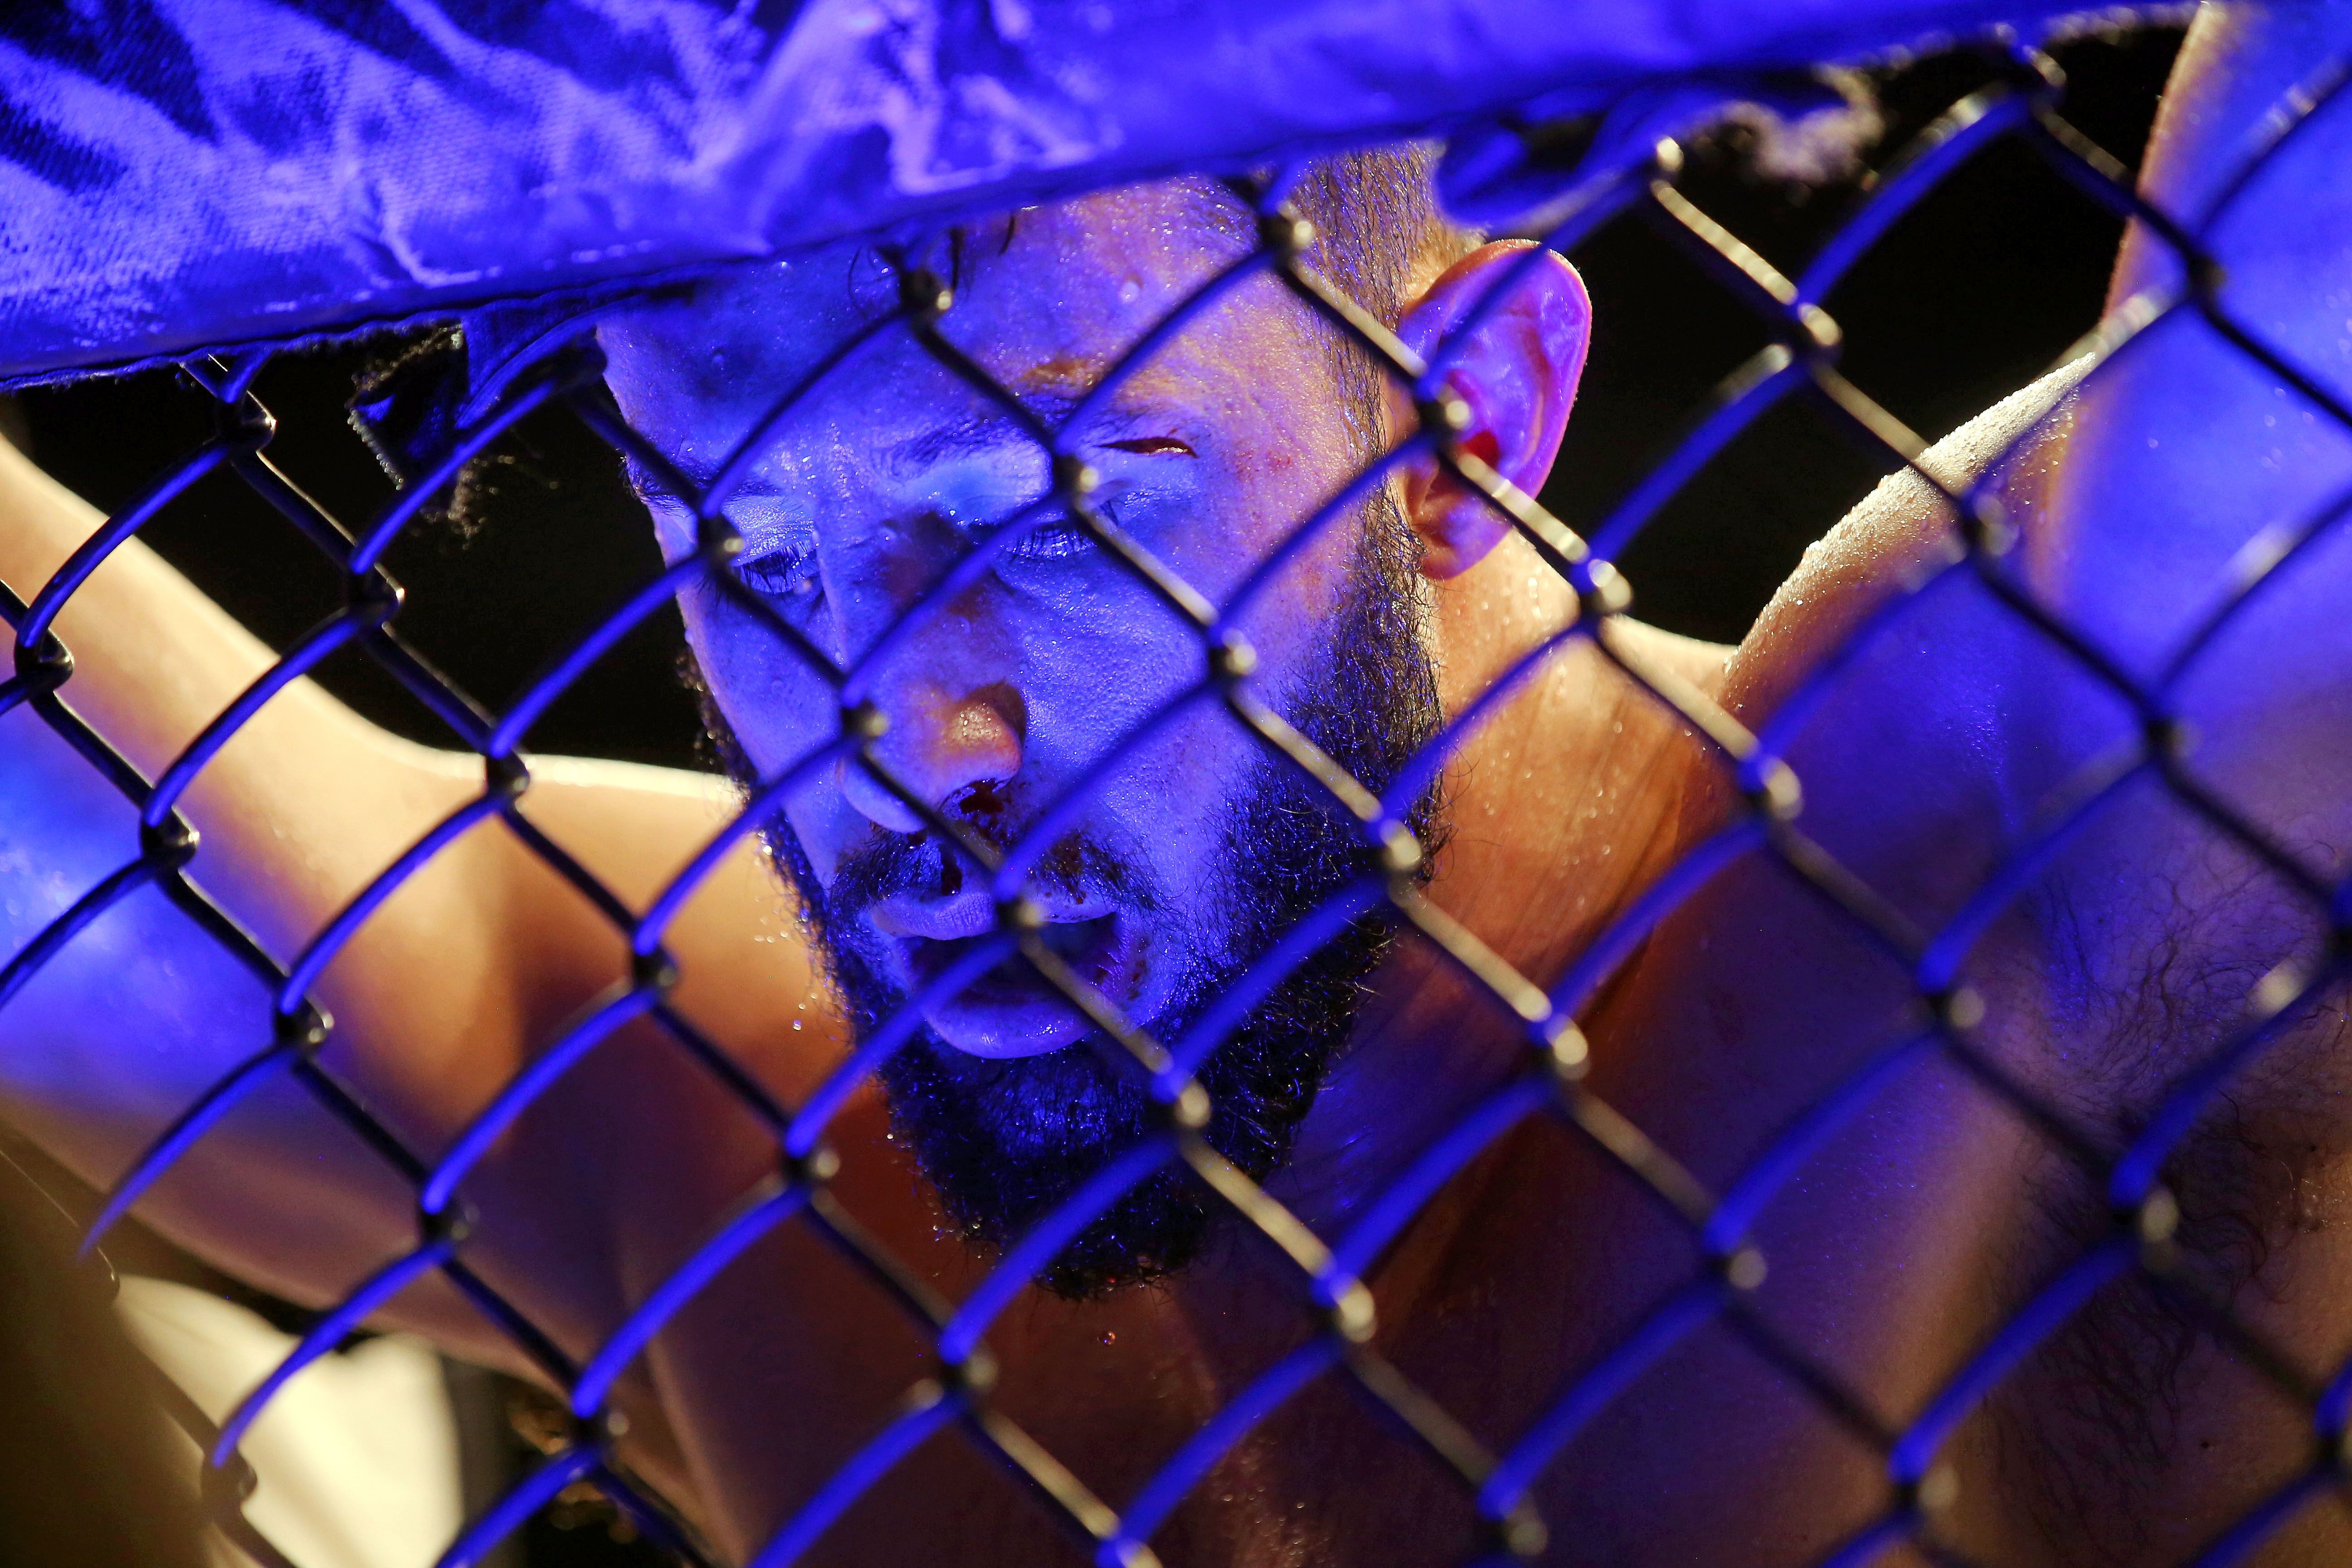 MMA: UFC 247-Jones vs Reyes